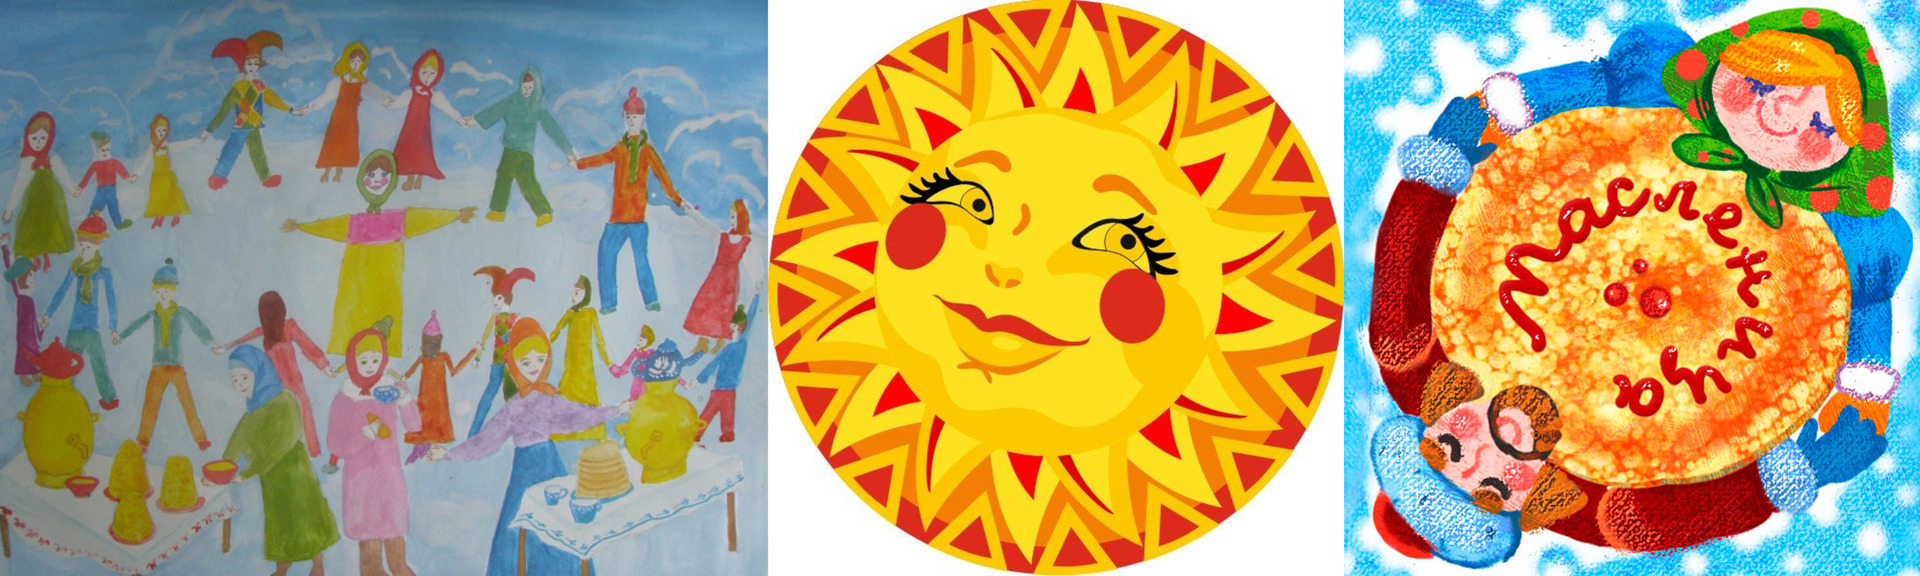 Солнышко масленица картинка для детей. Символы Масленицы. Солнце на Масленицу для детей. Изображение солнца на Масленицу. Солнце символ Масленицы.